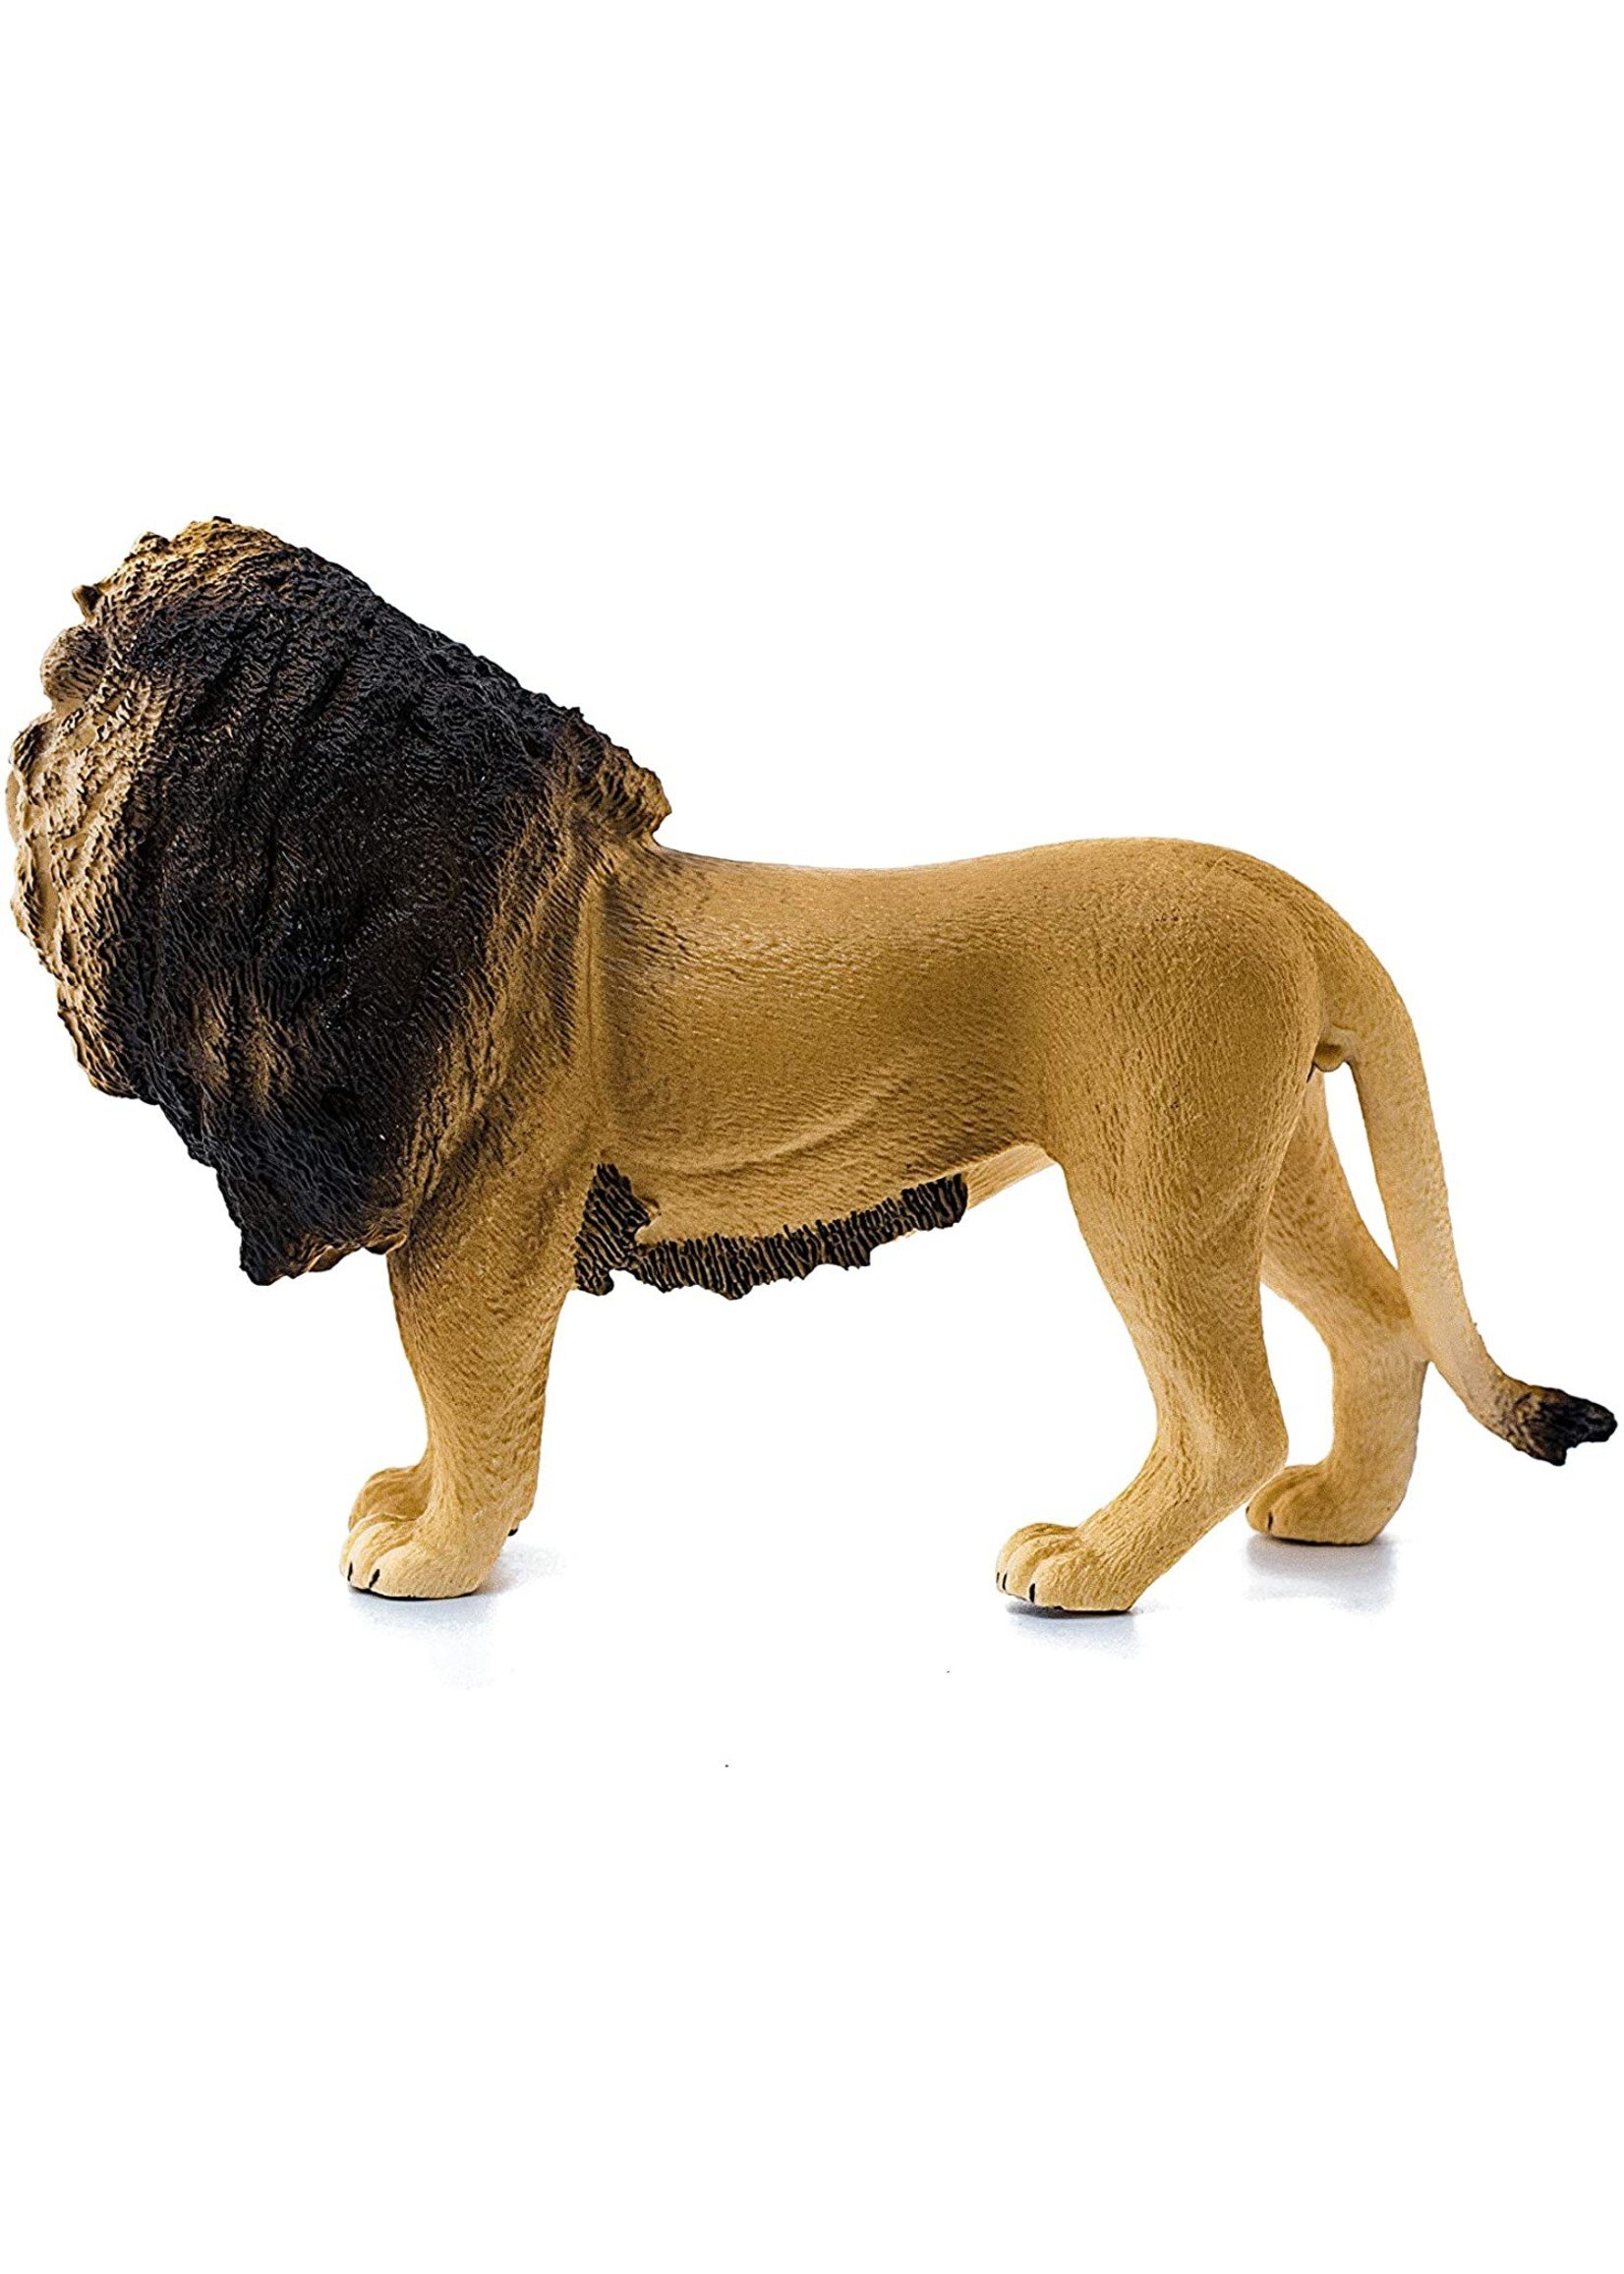 Schleich 14812 - Lion